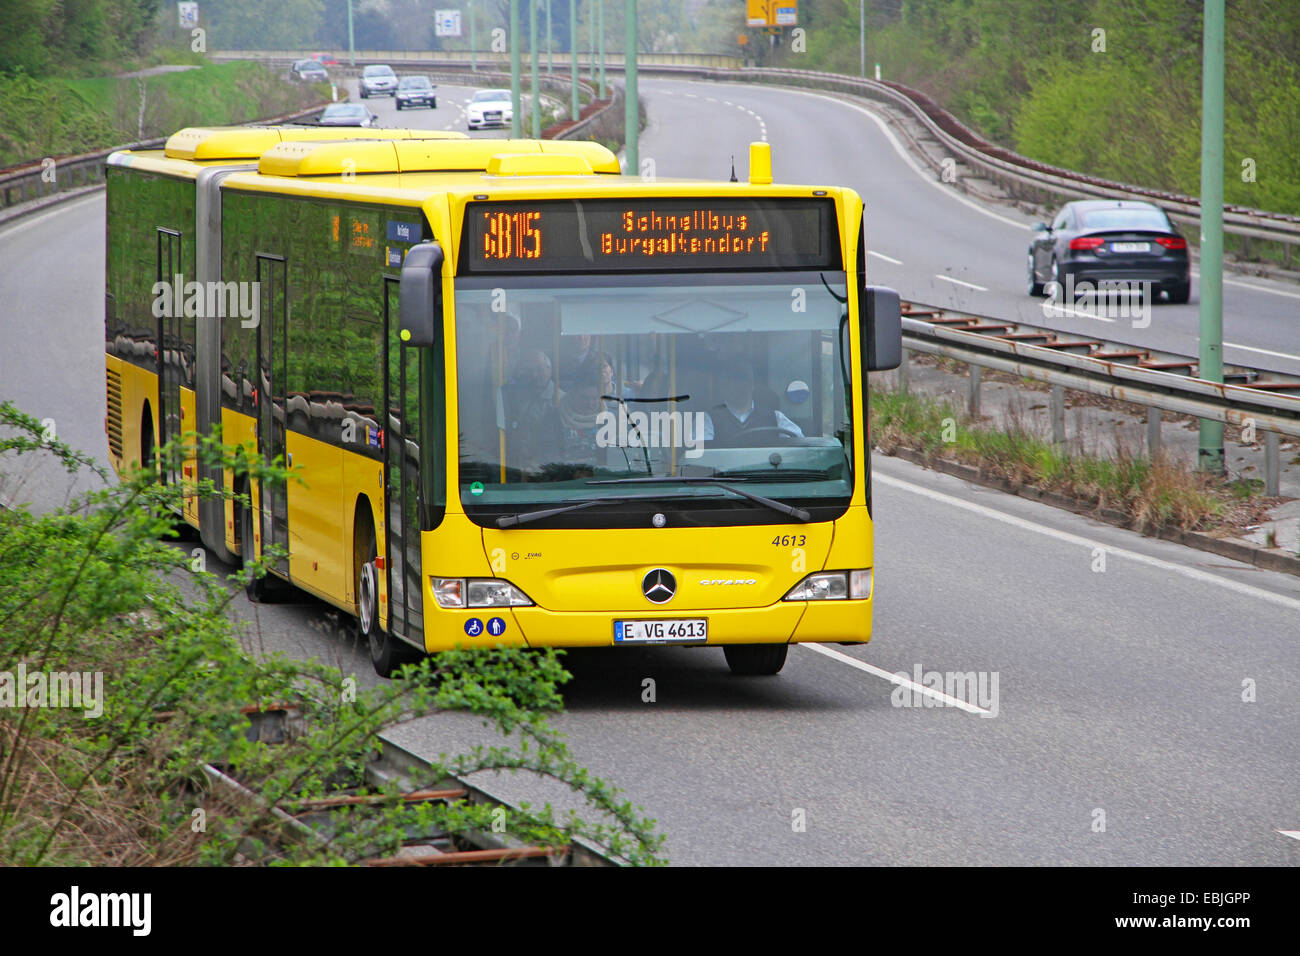 Servizio pubblico di veicolo per la superstrada che collega il centro città con i sobborghi, in Germania, in Renania settentrionale-Vestfalia, la zona della Ruhr, Essen Foto Stock